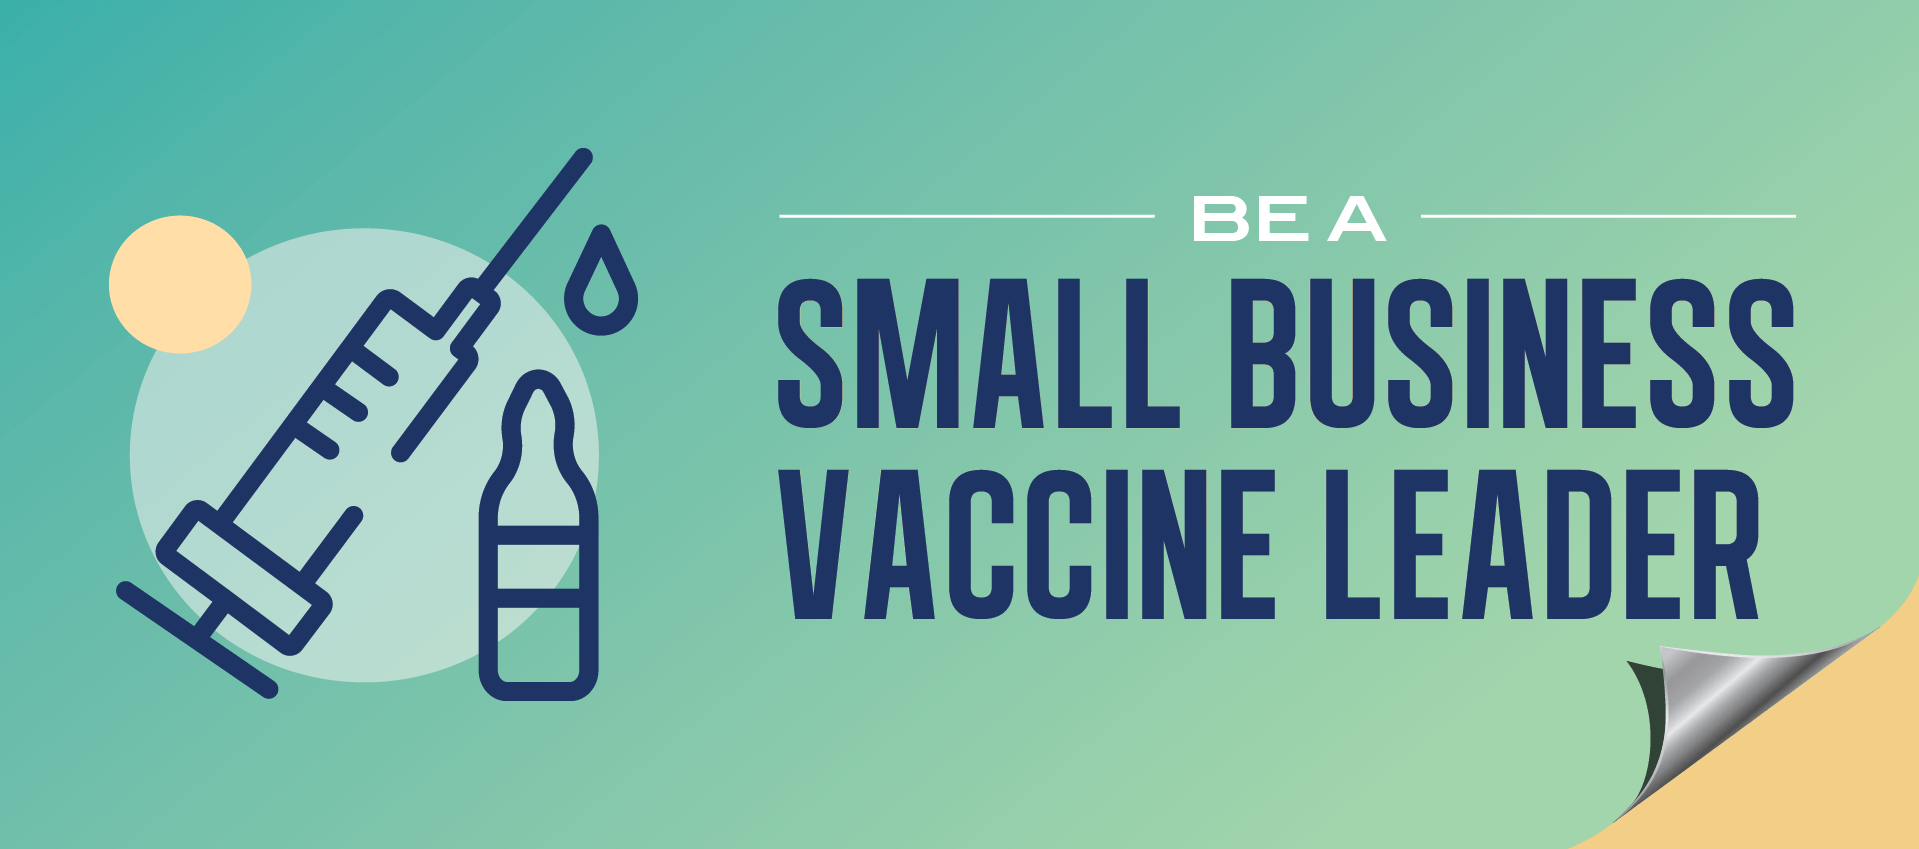 Sea un líder de la pequeña empresa en materia de vacunas: Únase a nosotros el 4/6/21